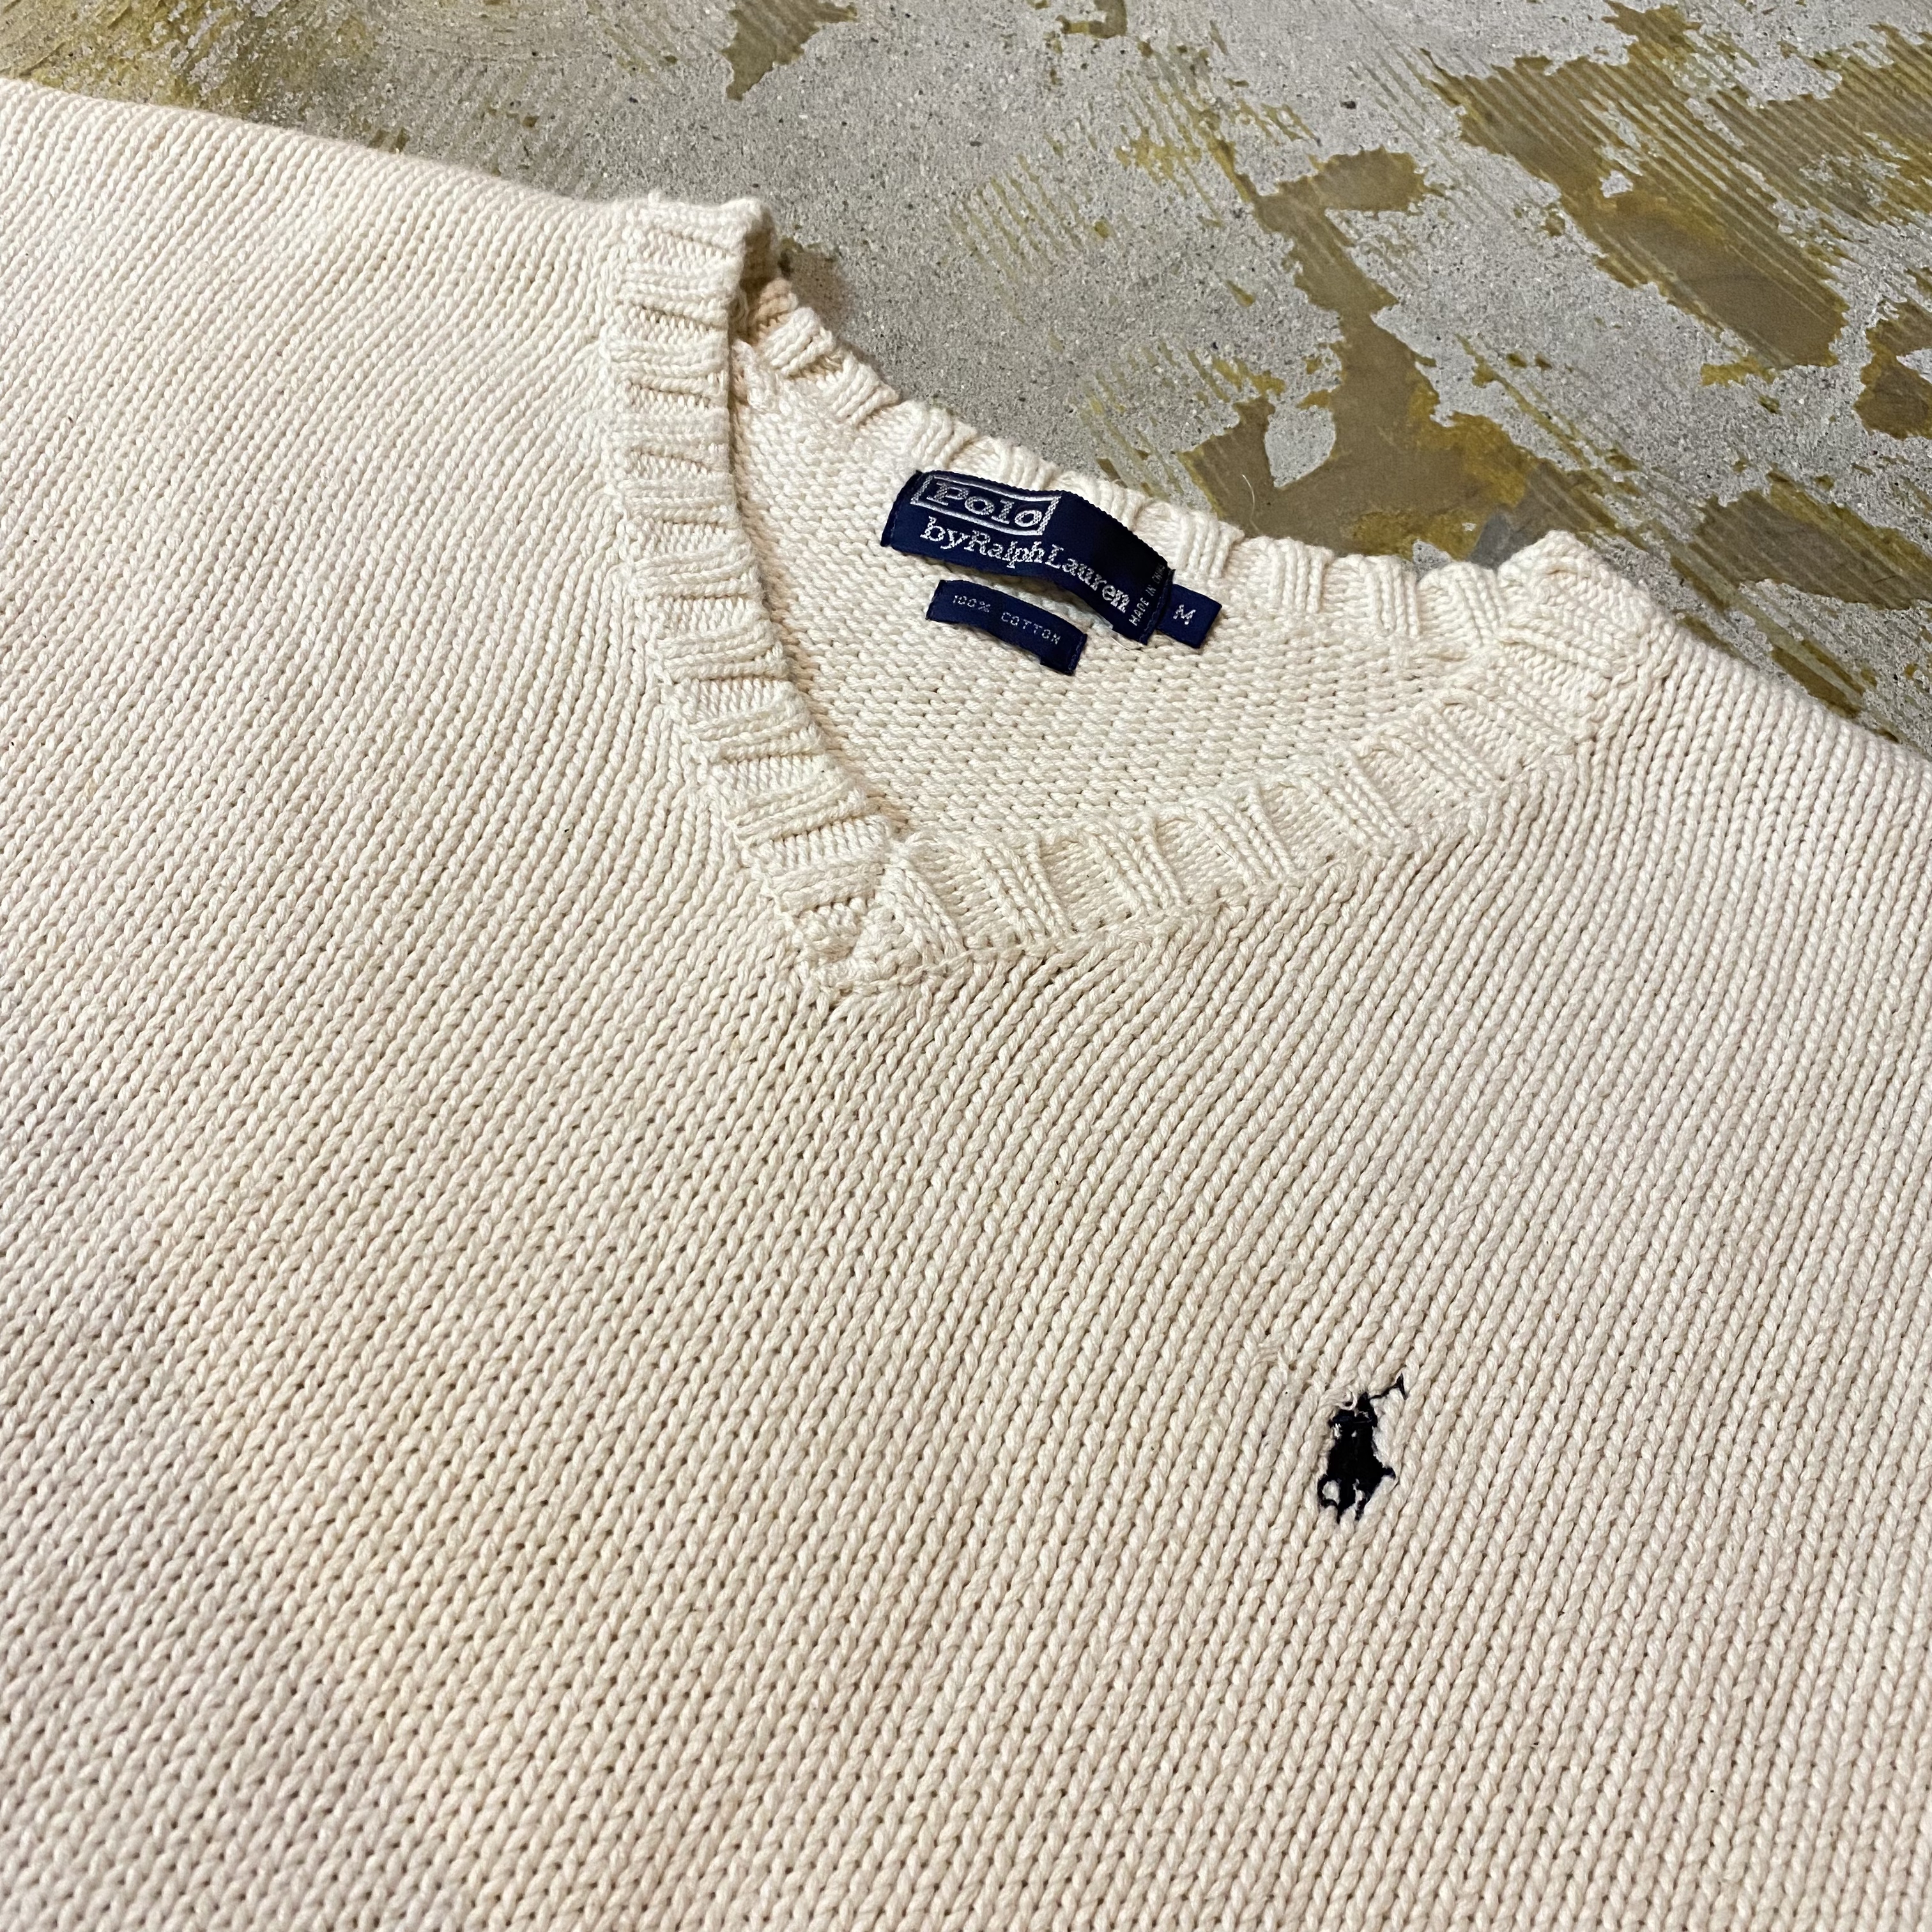 Polo Ralph Lauren v neck cotton knit